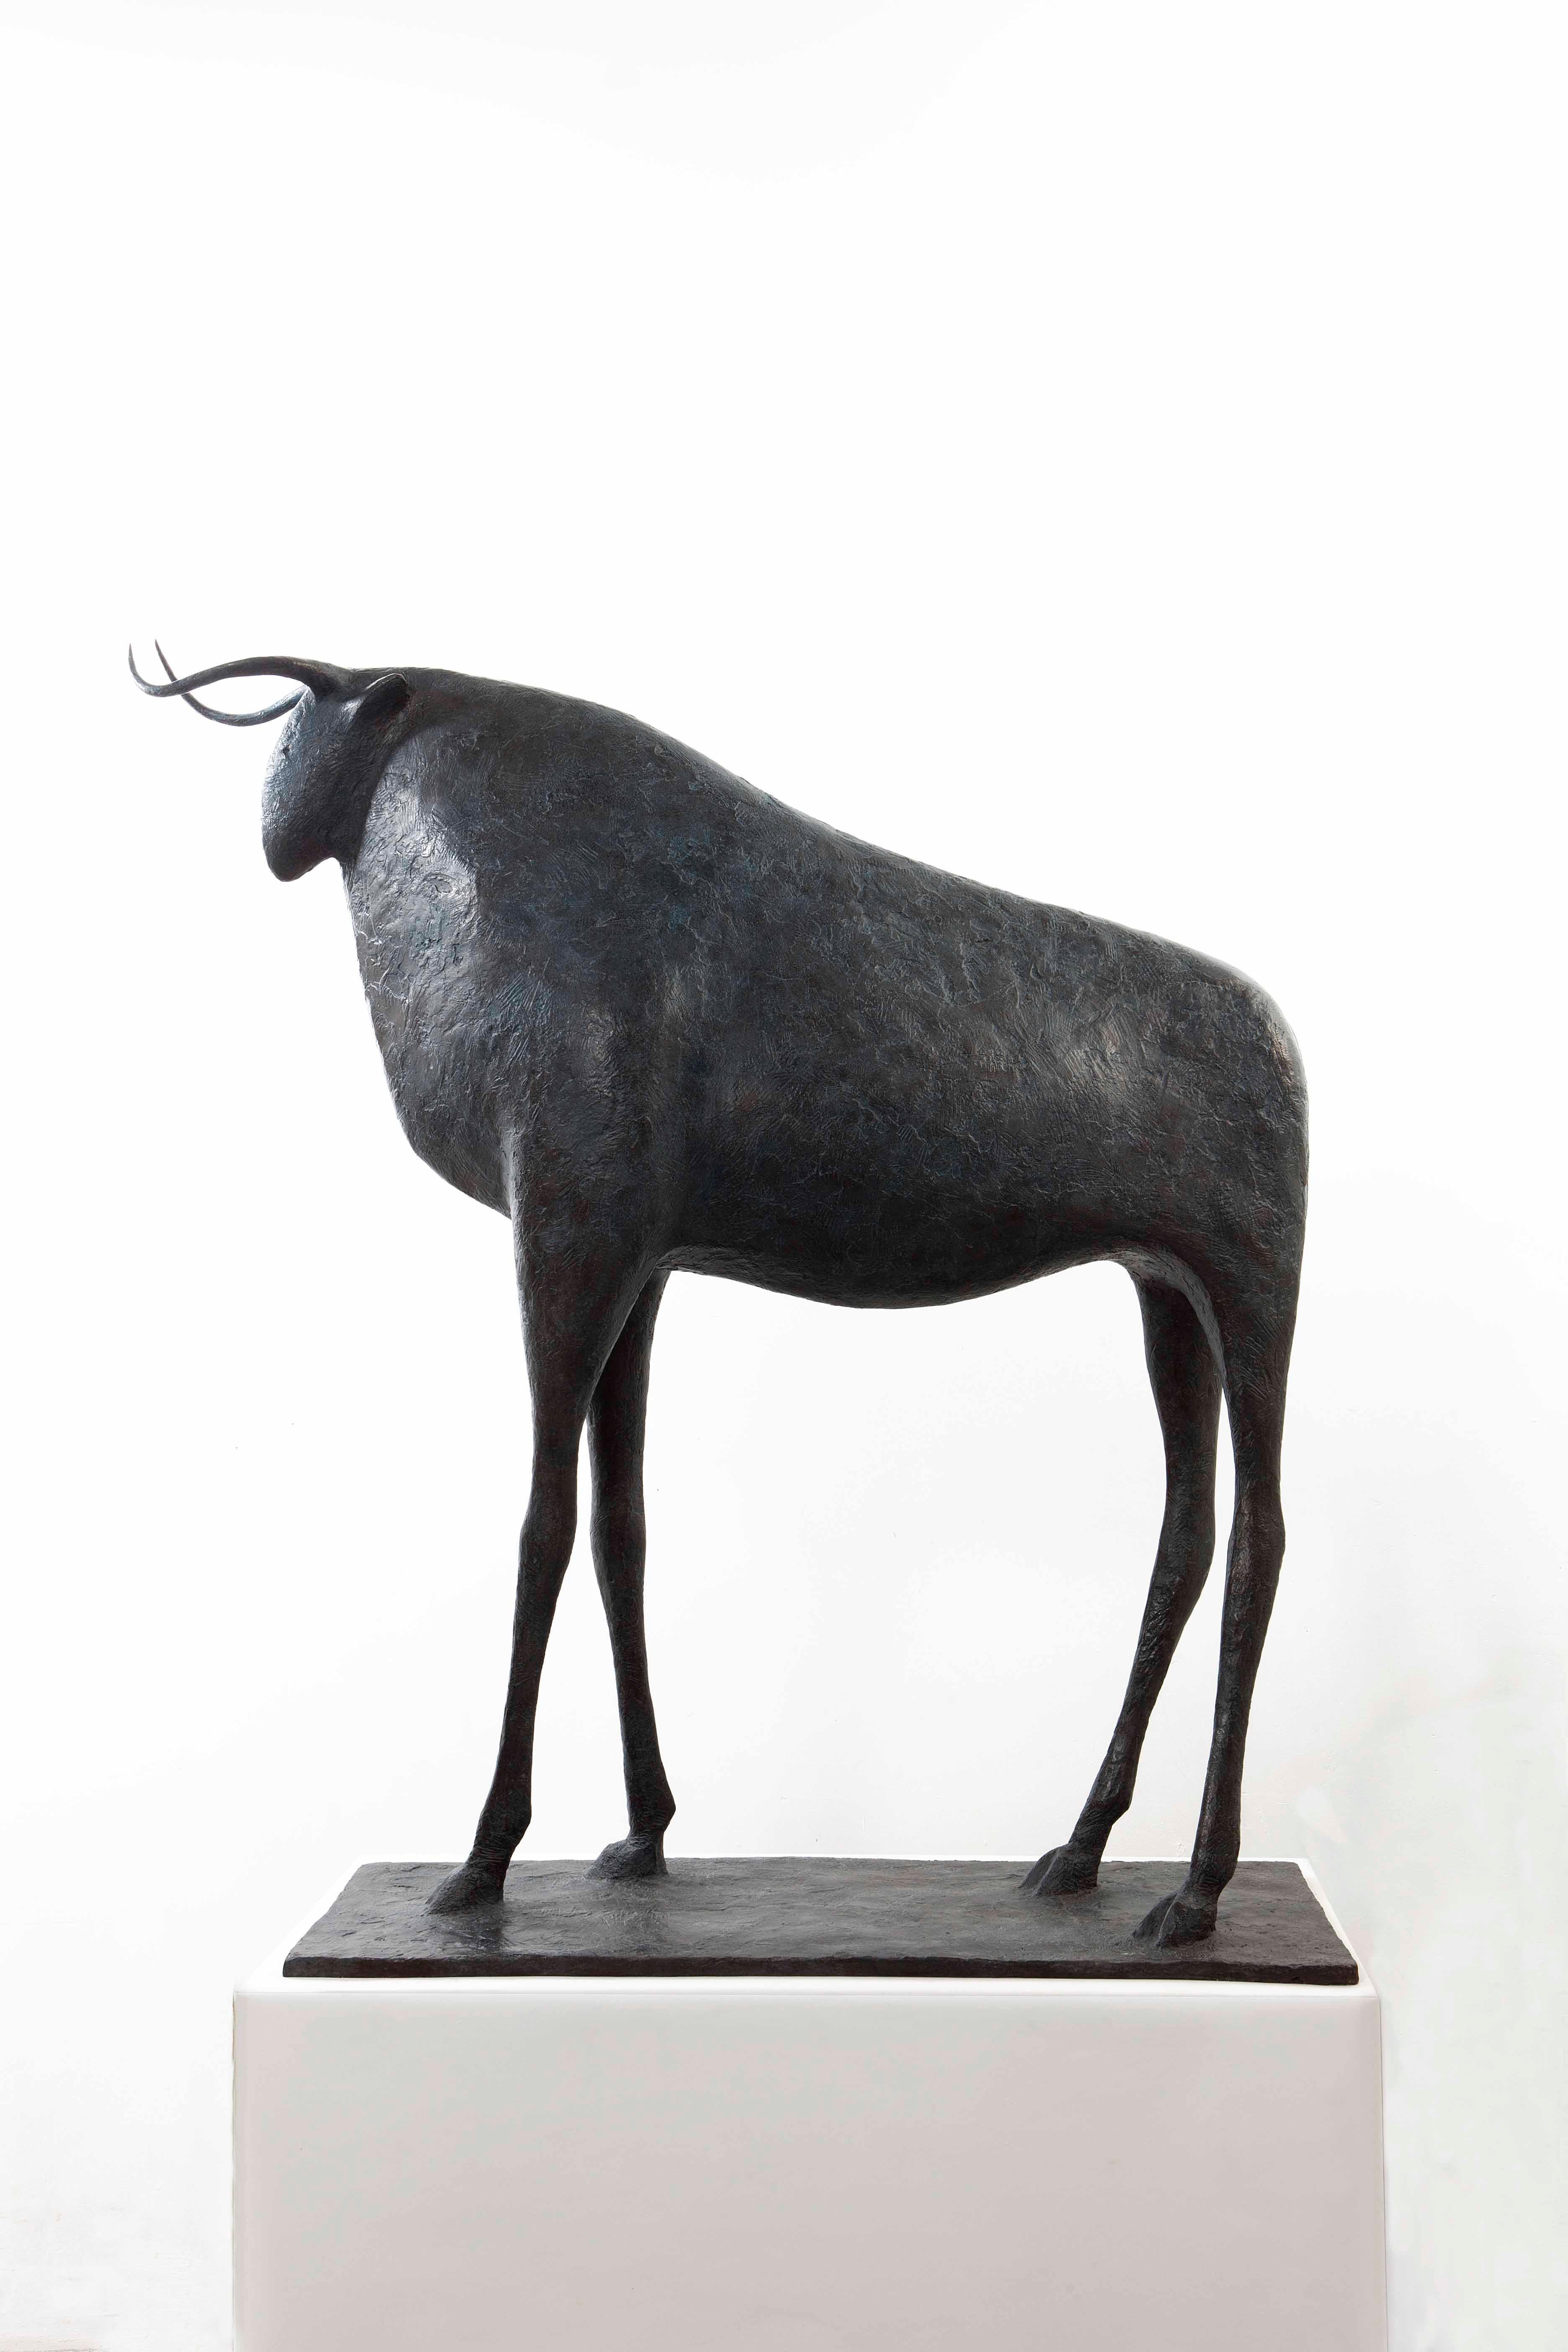 Grand taureau, sculpture en bronze de l'artiste contemporain français Pierre Yermia.
120 cm × 100 cm × 34 cm. Édition limitée à 8 exemplaires et 4 épreuves d'artiste, chacun signé et numéroté.
"Le taureau est le seul animal masculin de mon